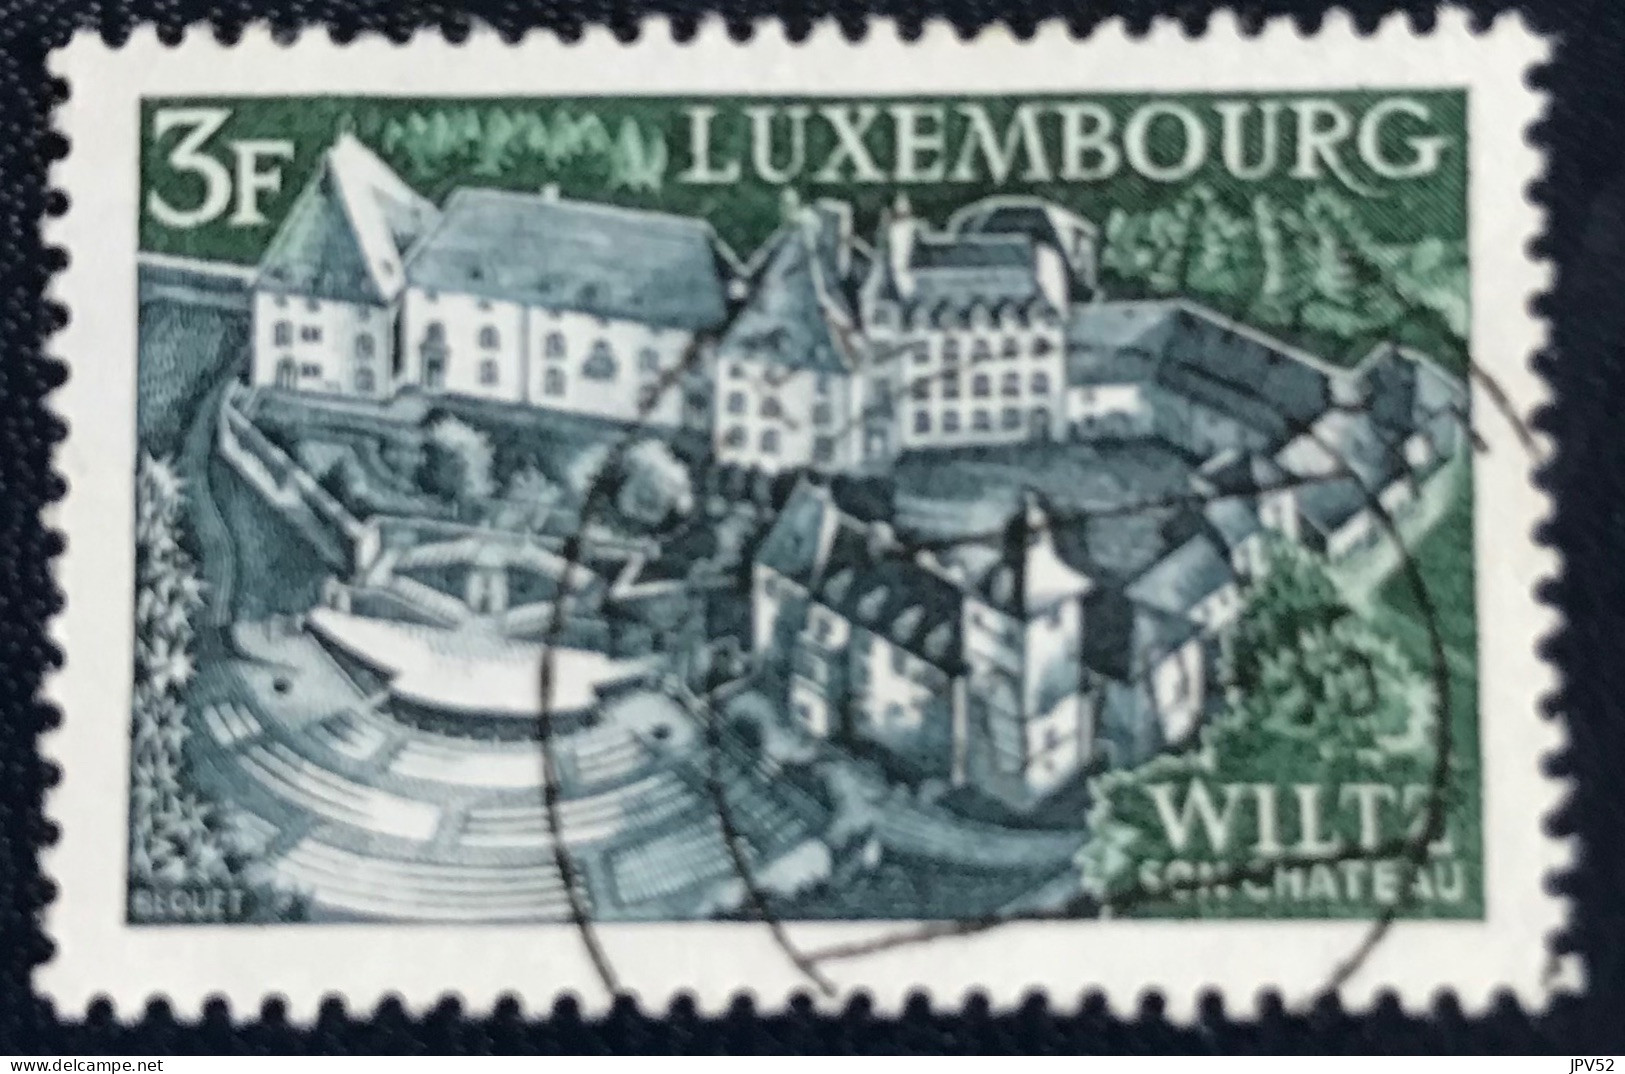 Luxembourg - Luxemburg - C18/33 - 1969 - (°)used - Michel 797 - Wiltz - Oblitérés